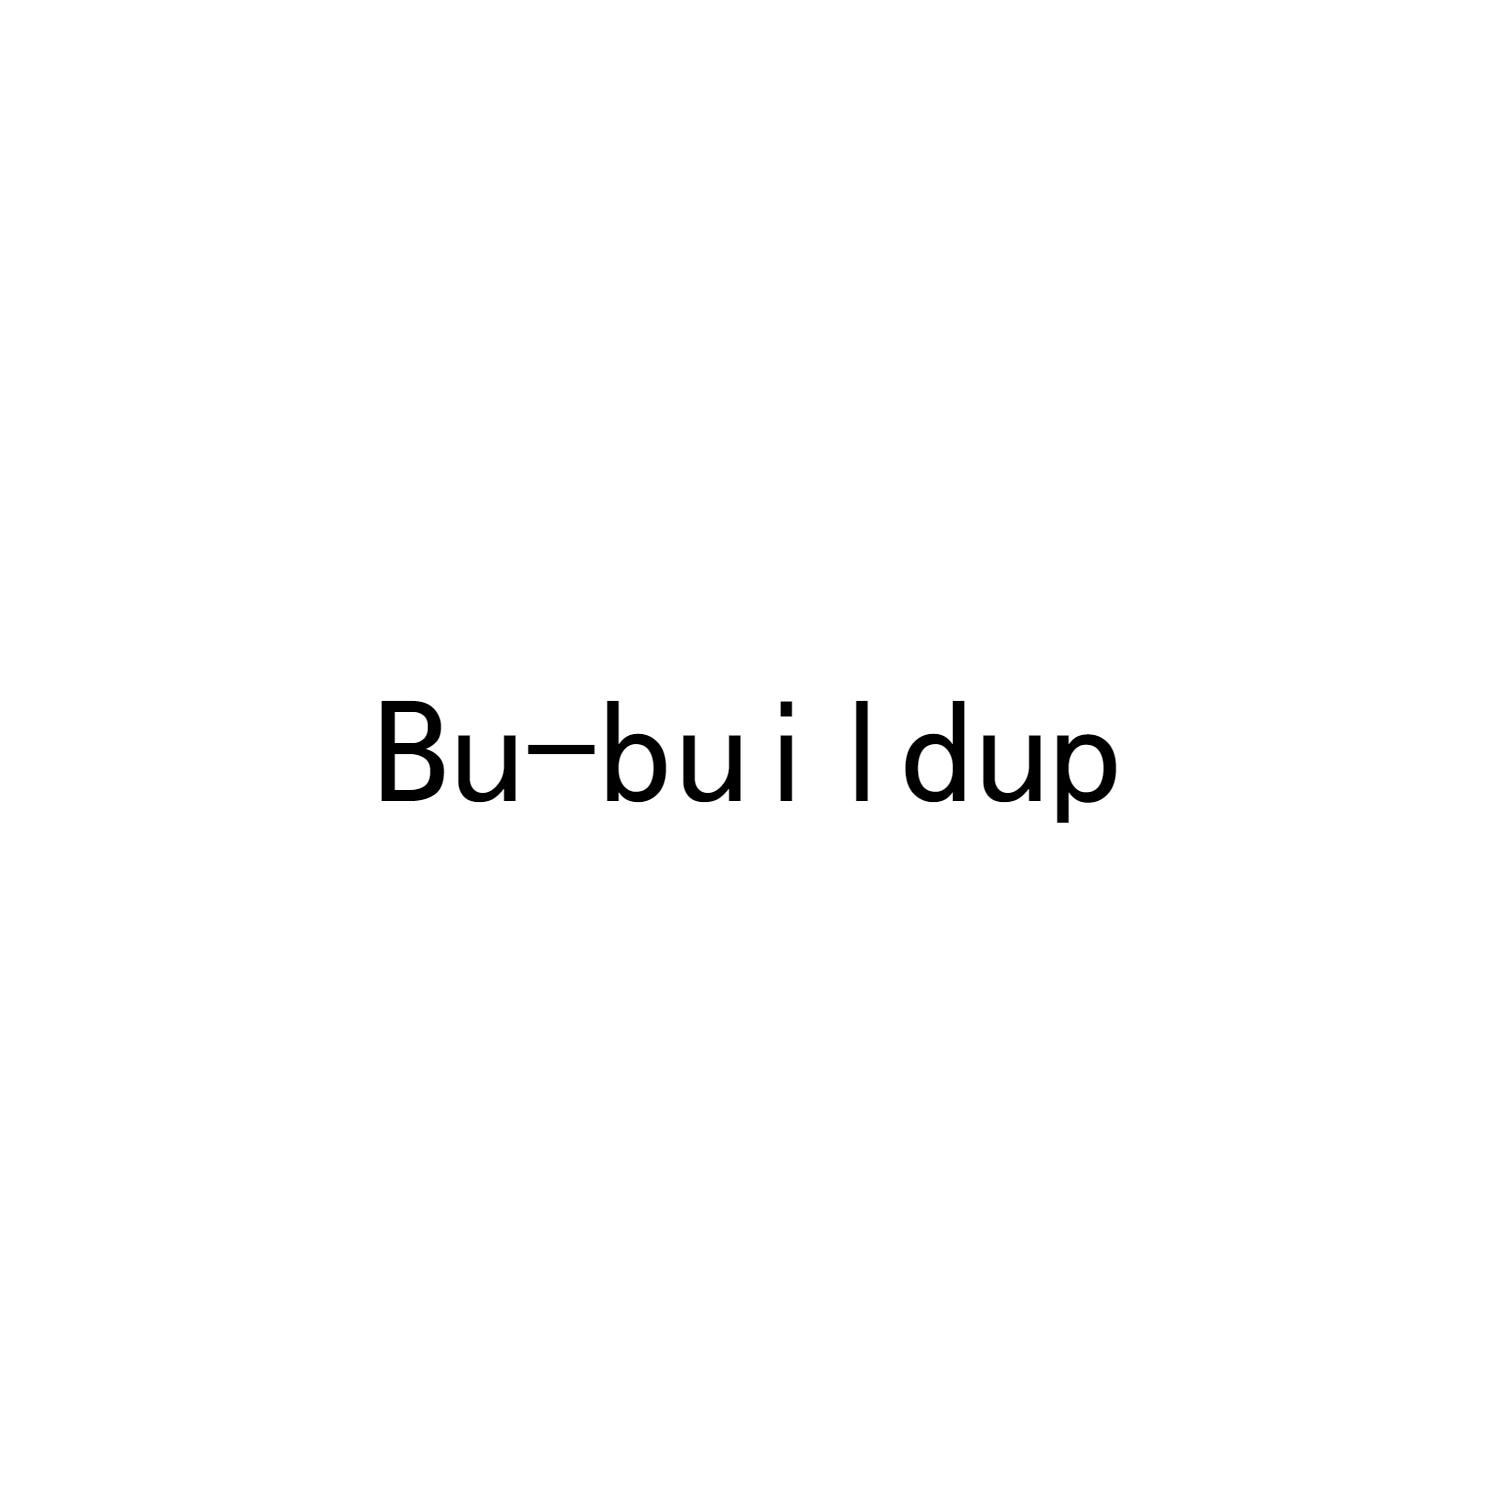 转让商标-BU-BUILDUP